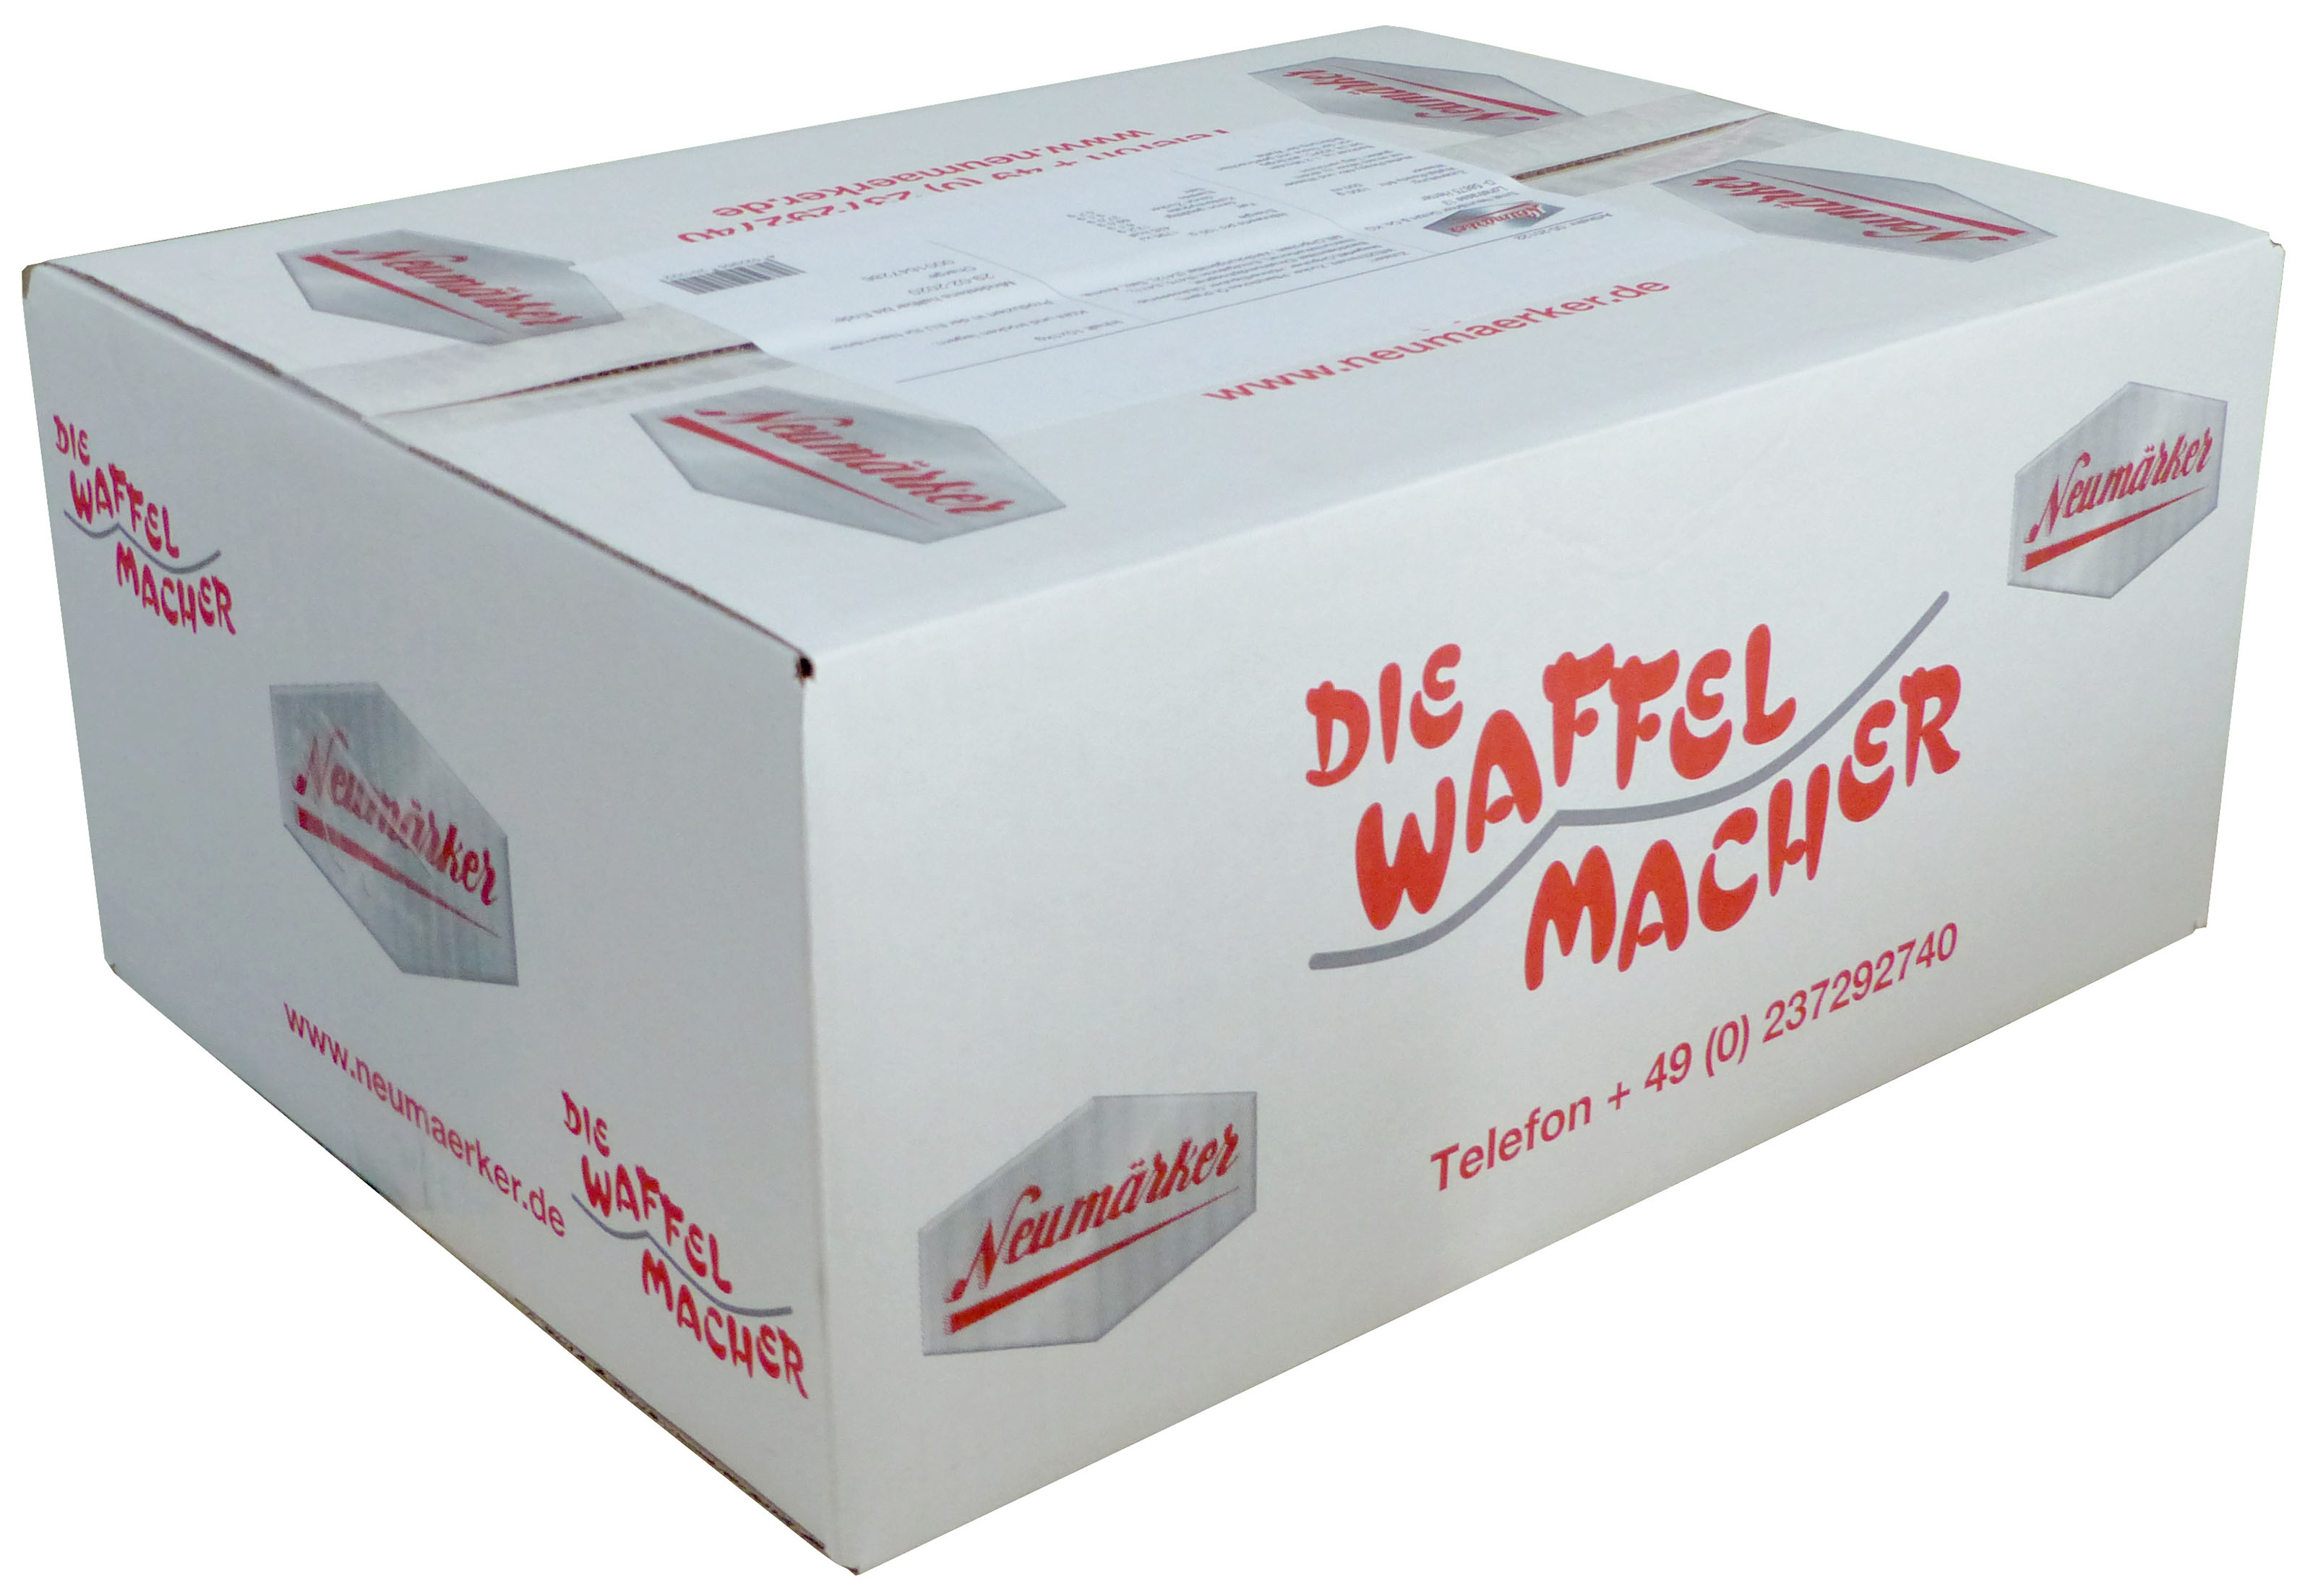 Neumärker Waffel-Ready-Mix Karton à 10 kg (10x 1 kg)